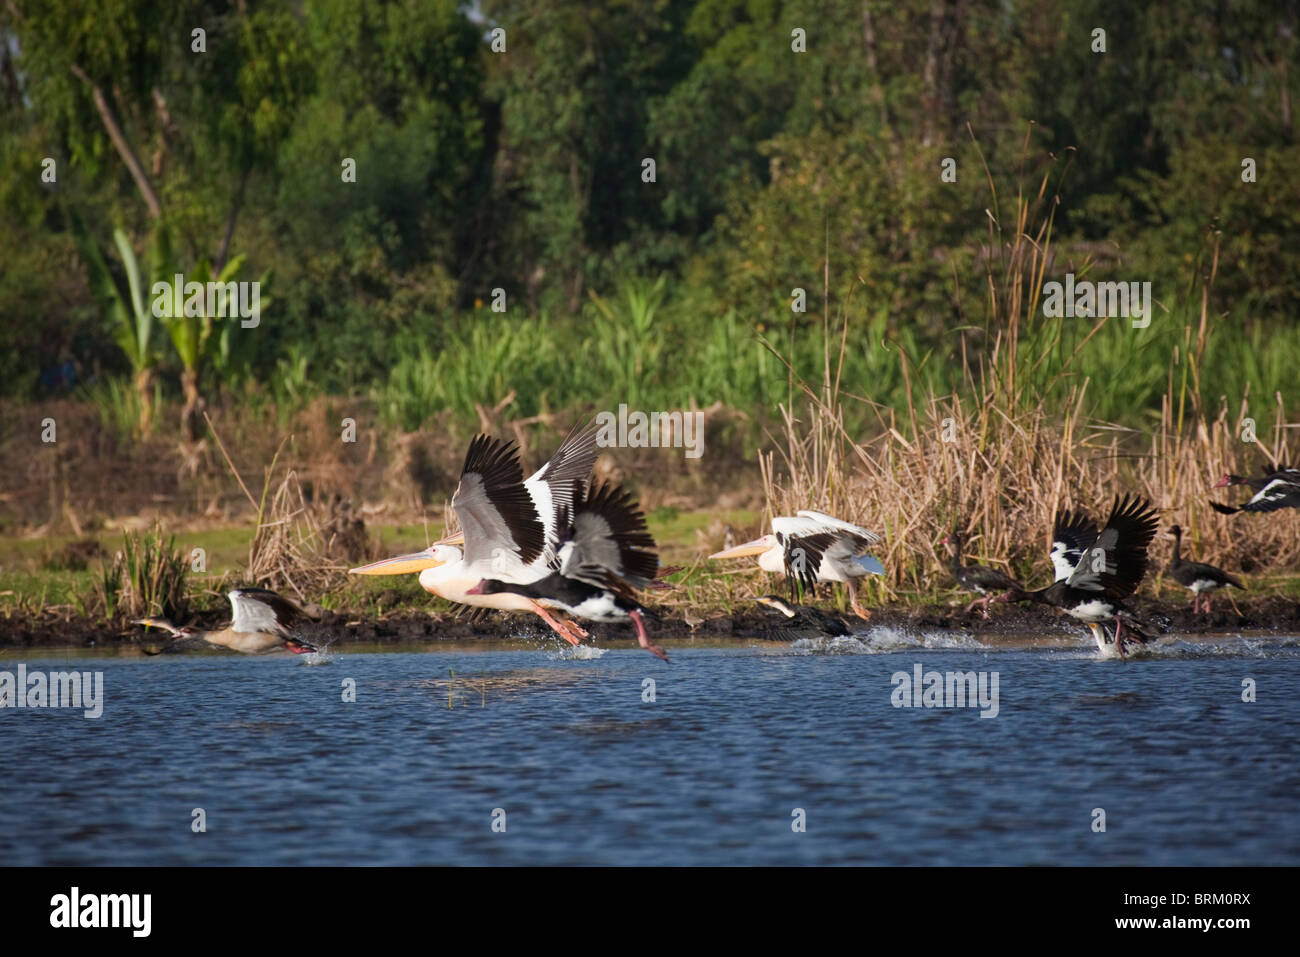 Gran pelícanos blancos, Espuela winger oca y ganso egipcio despegando desde el lago Awassa Foto de stock